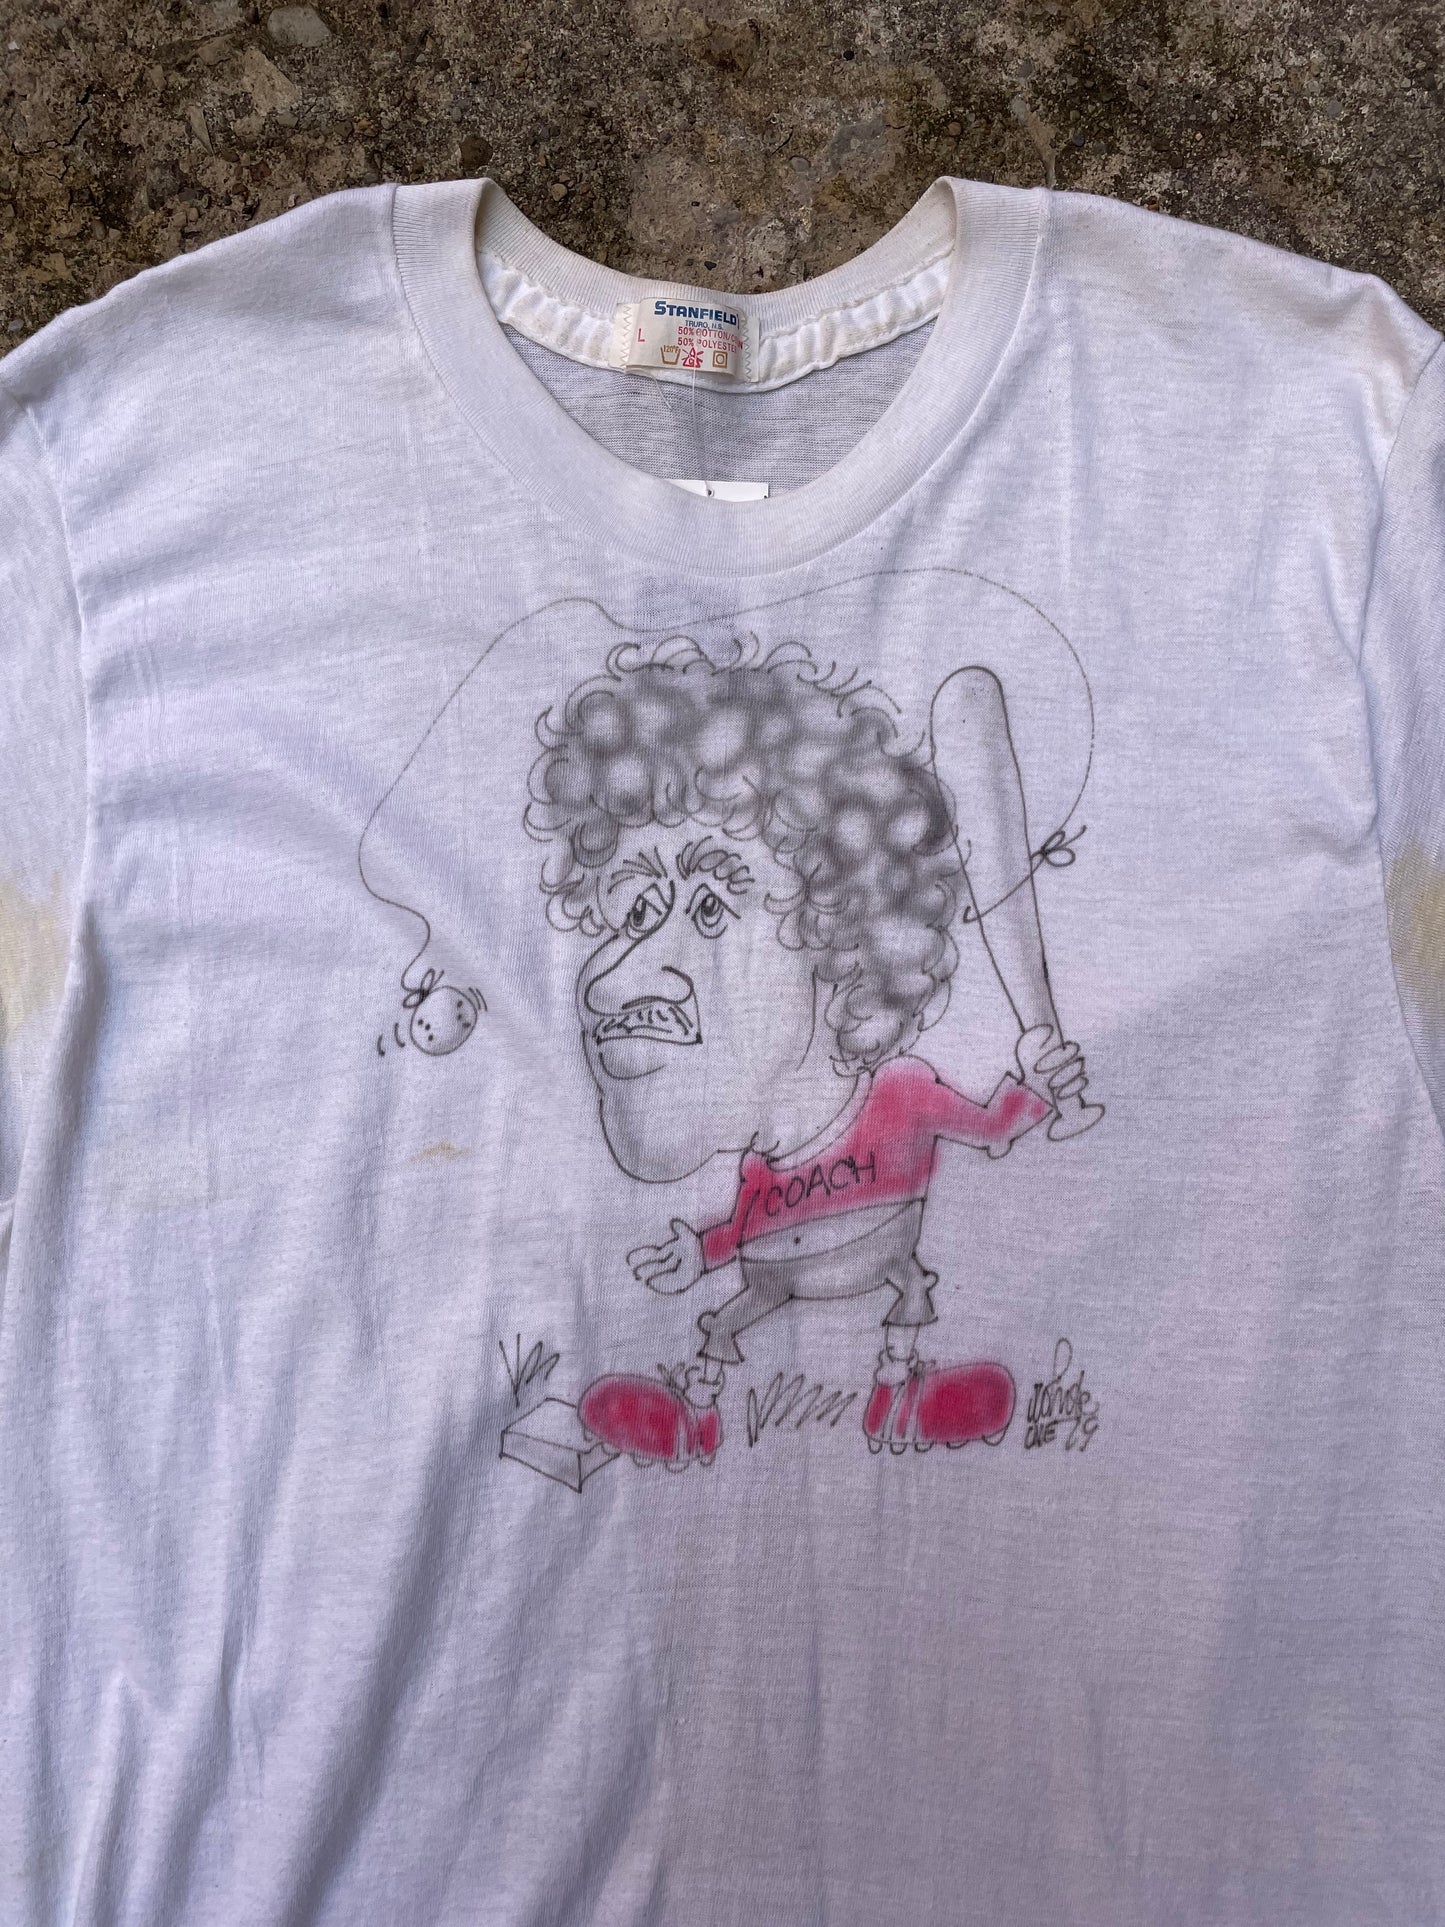 1979 'Coach' Airbrushed T-Shirt - M